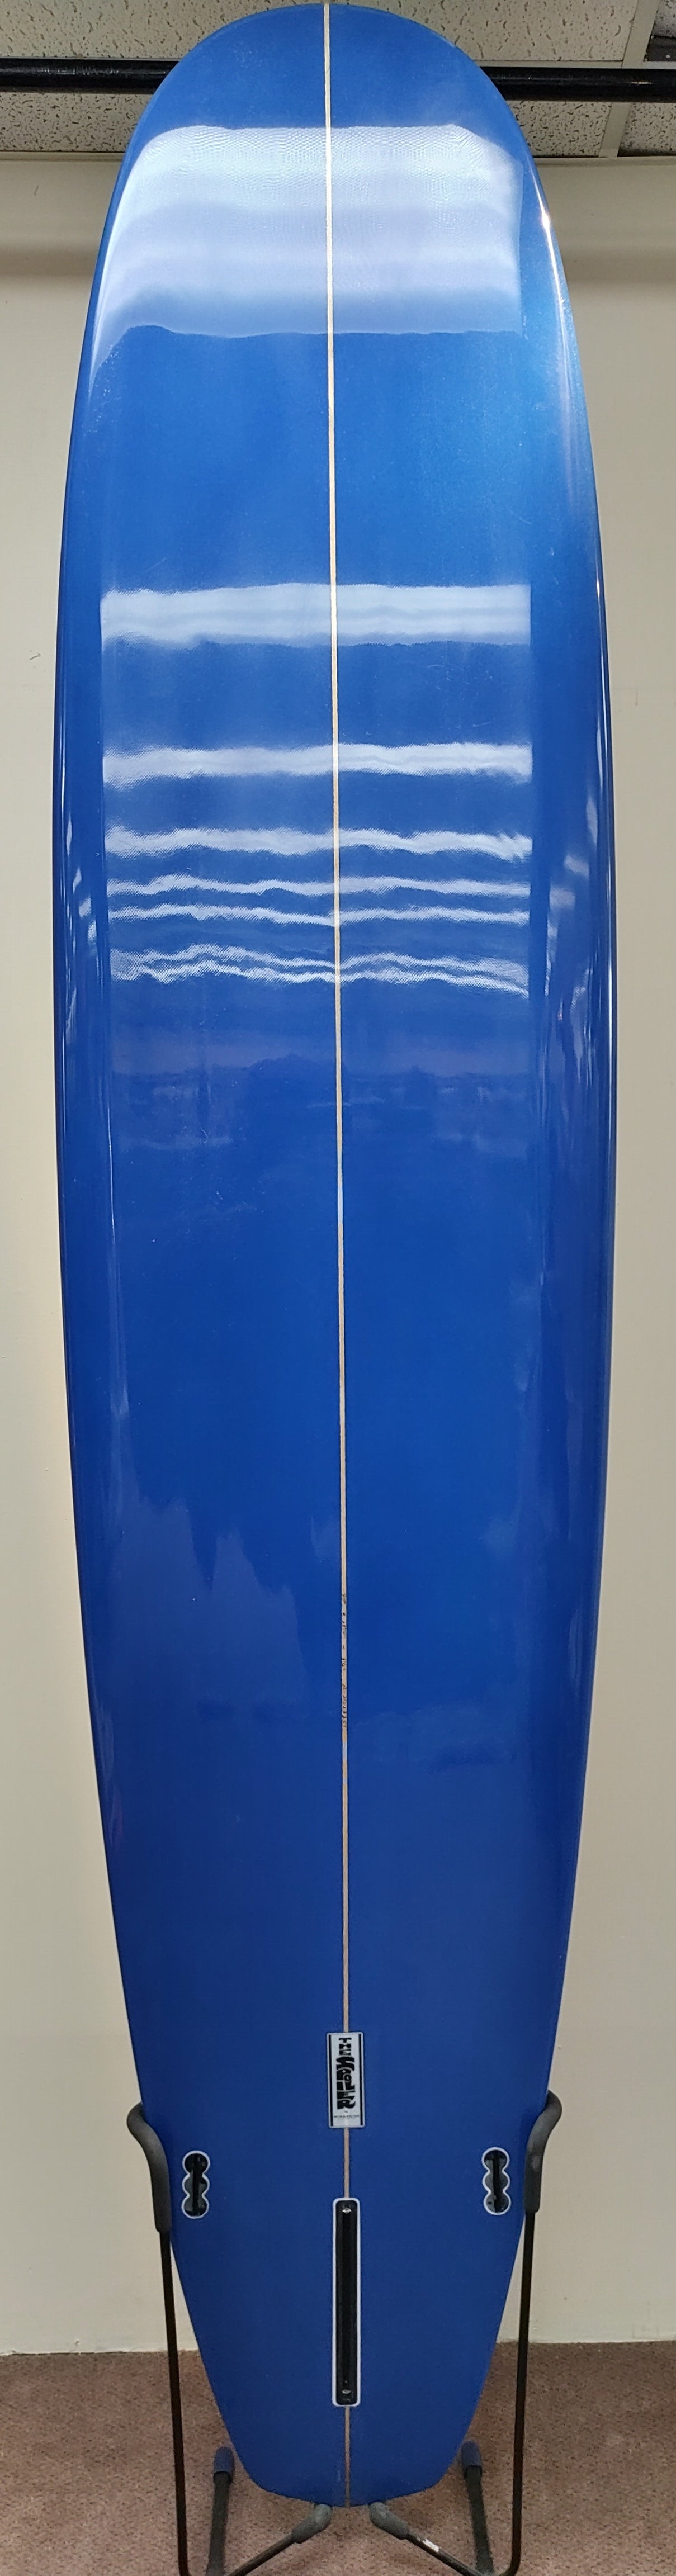 The Spoiler 9'0 Longboard Surfboard